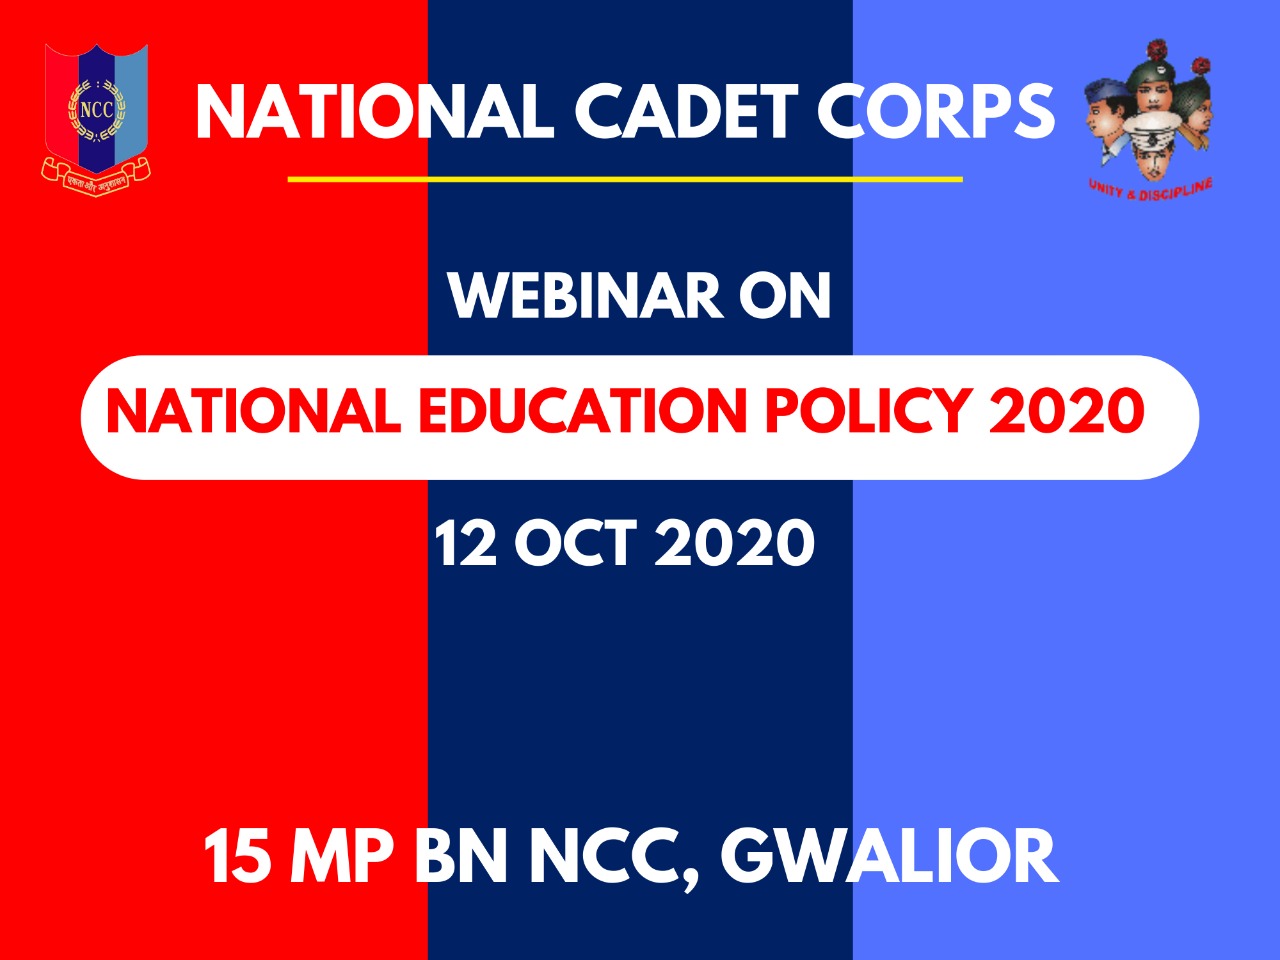 15 मप्र एनसीसी बटालियन के निर्देशन में राष्ट्रीय नई शिक्षा नीति 2020 वेबिनार 12 अक्टूबर 2020 को होगी आयोजित | New India Times